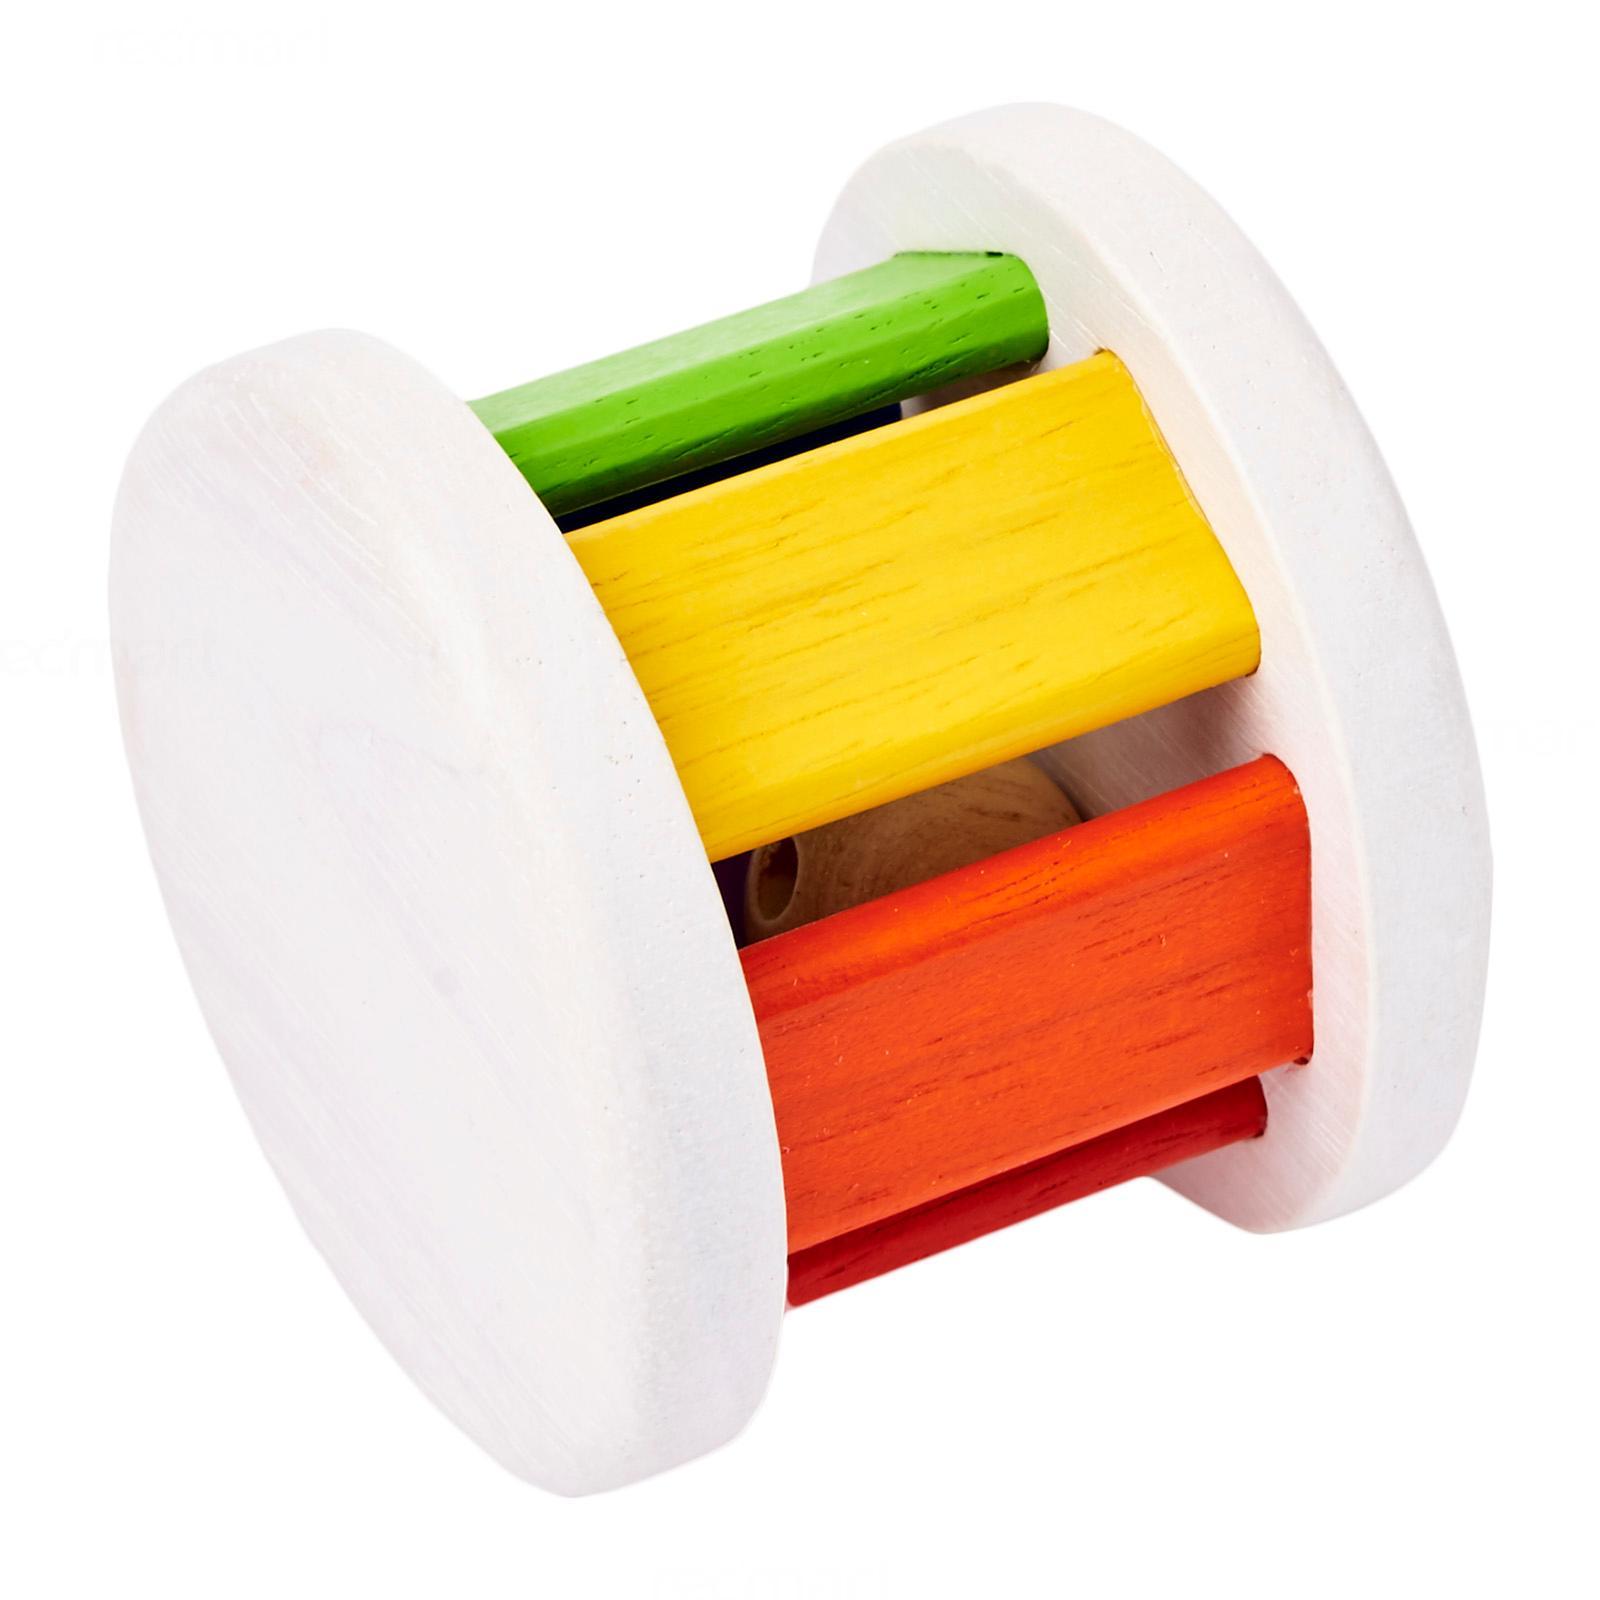 PLANTOYS ROLLER ของเล่นไม้แปลนทอยส์ ของเล่นเสริมทักษะ ลูกกลิ้งหลากสี